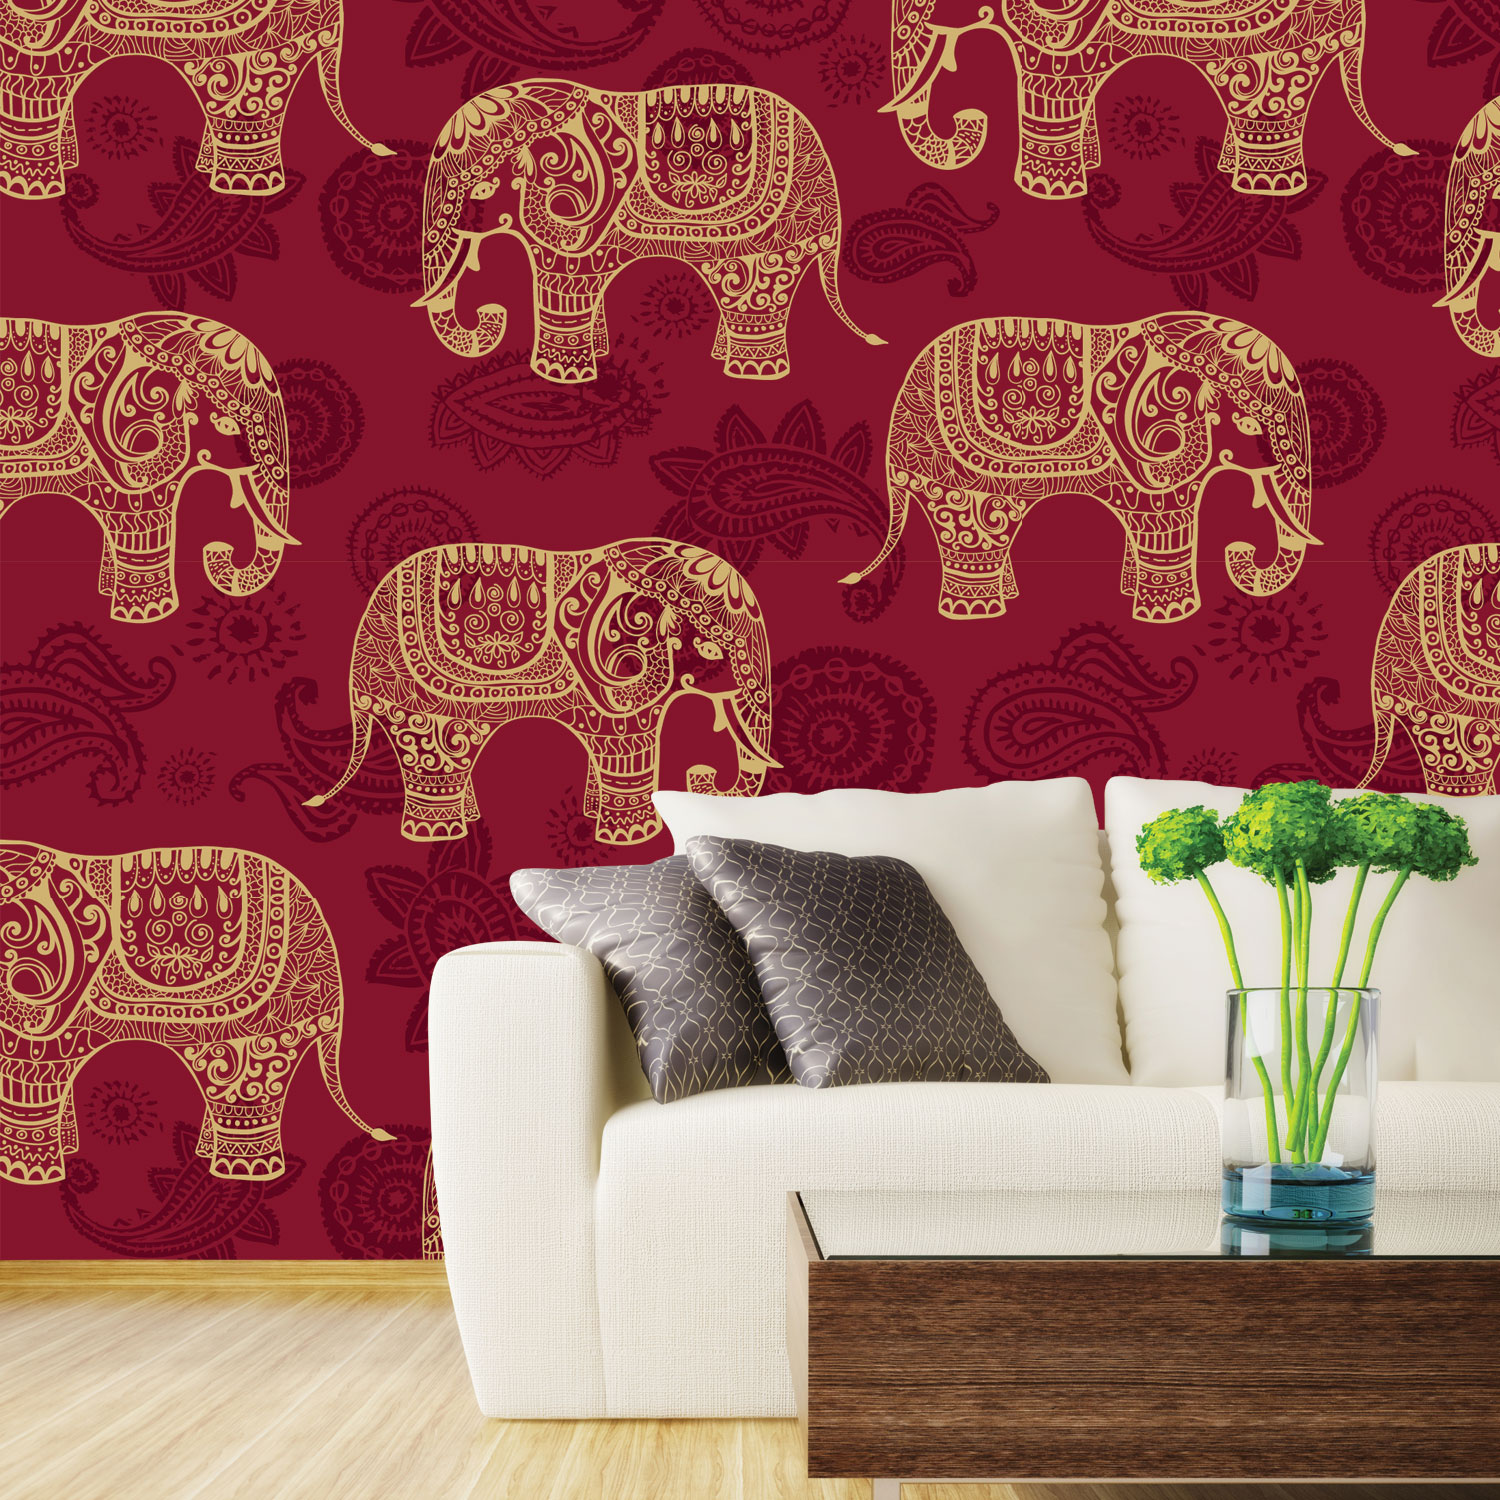 disegno della carta da parati per parete in india,elefante,elefante indiano,adesivo da parete,sfondo,elefanti e mammut